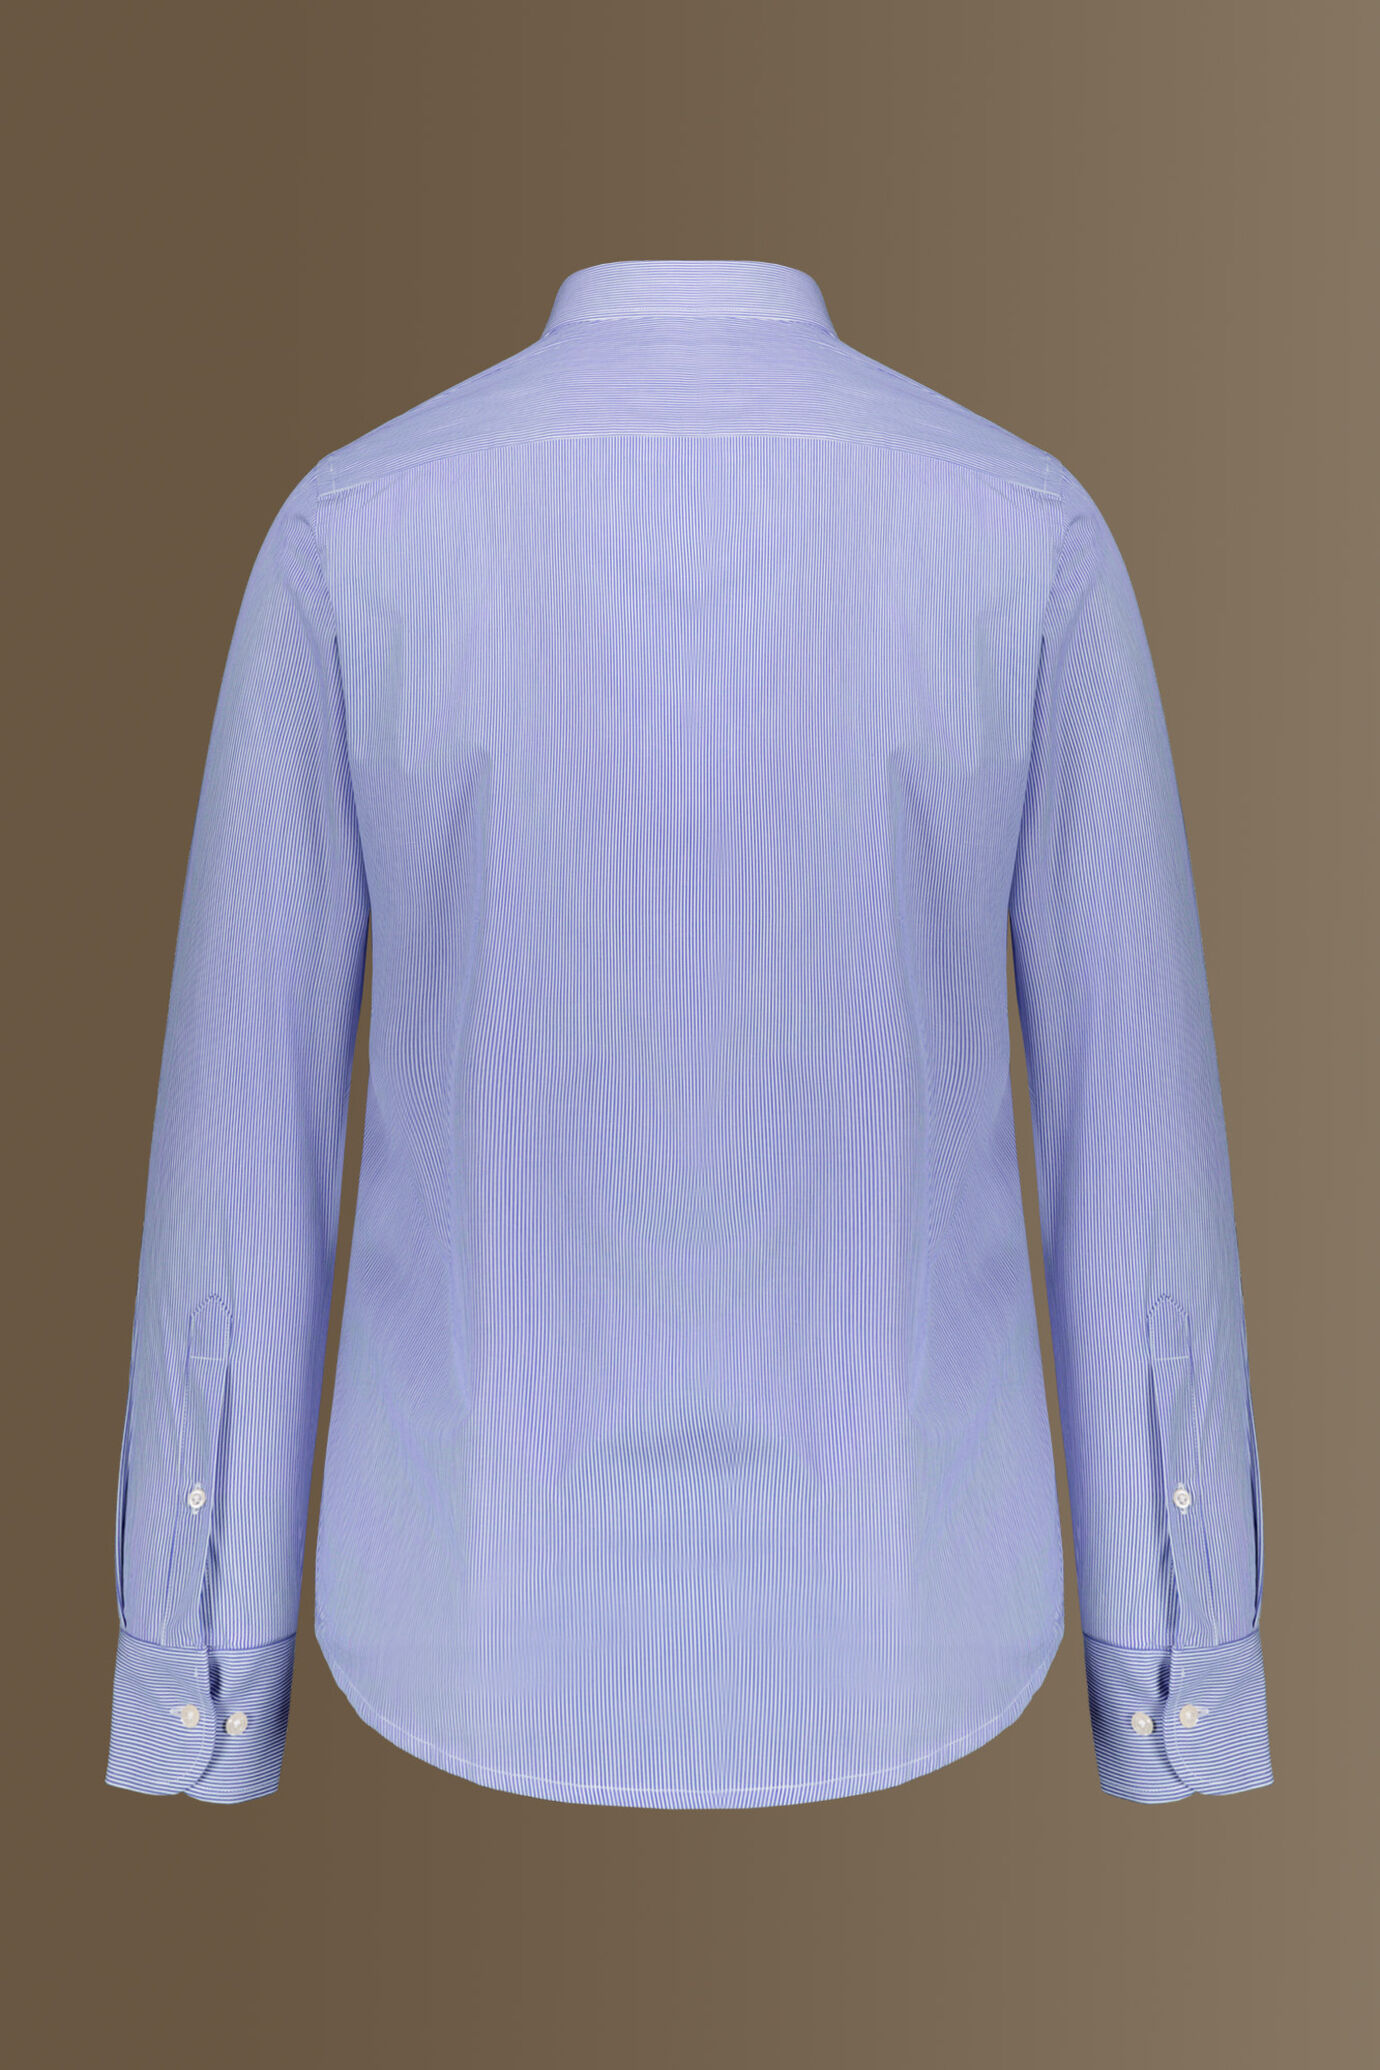 Camicia classica uomo collo francese 100% cotone tinto filo riga stretta image number 5